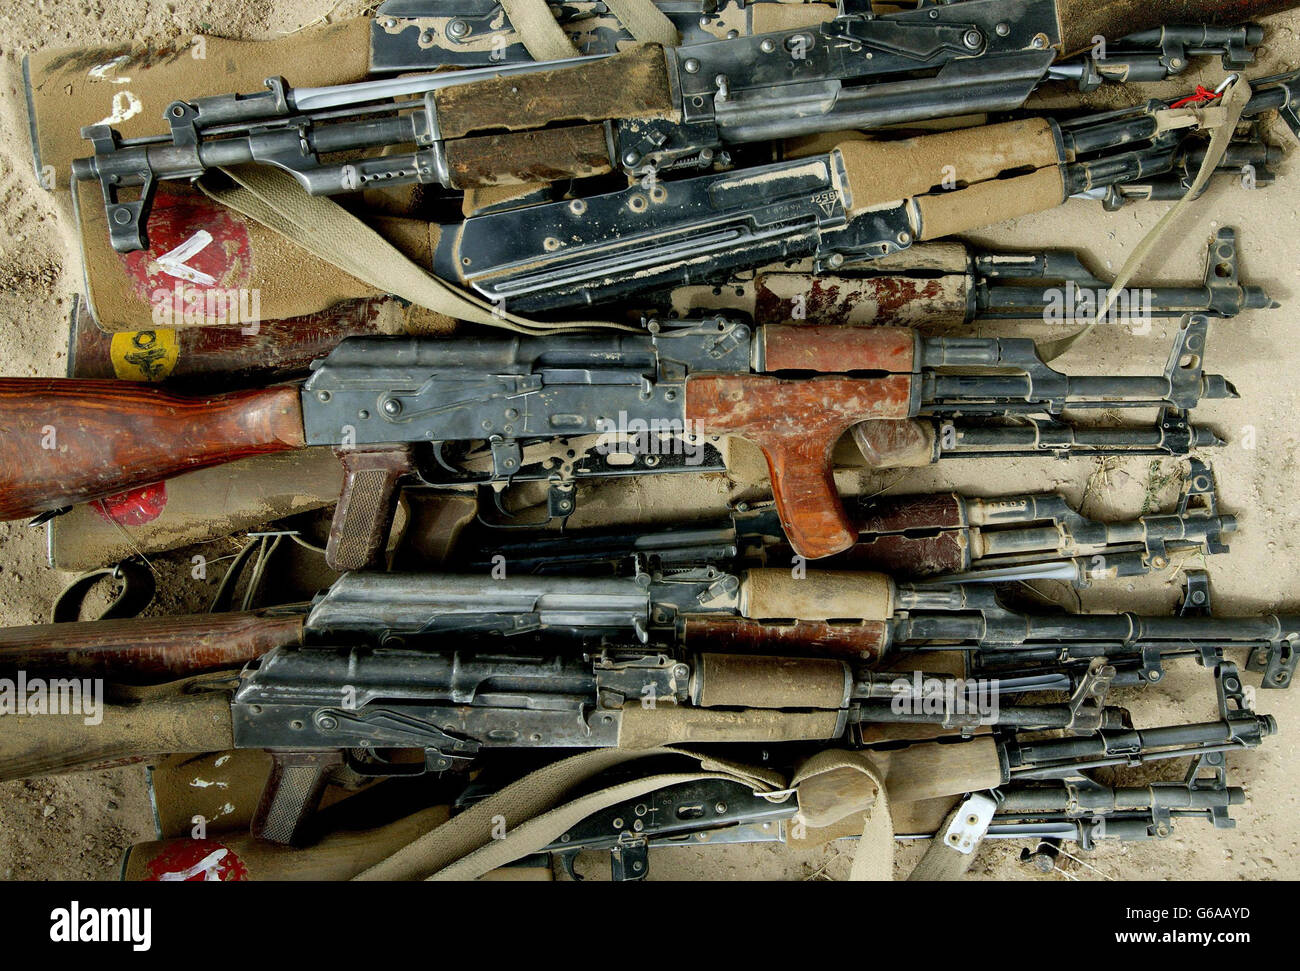 AK47 fucili d'assalto. Foto Stock